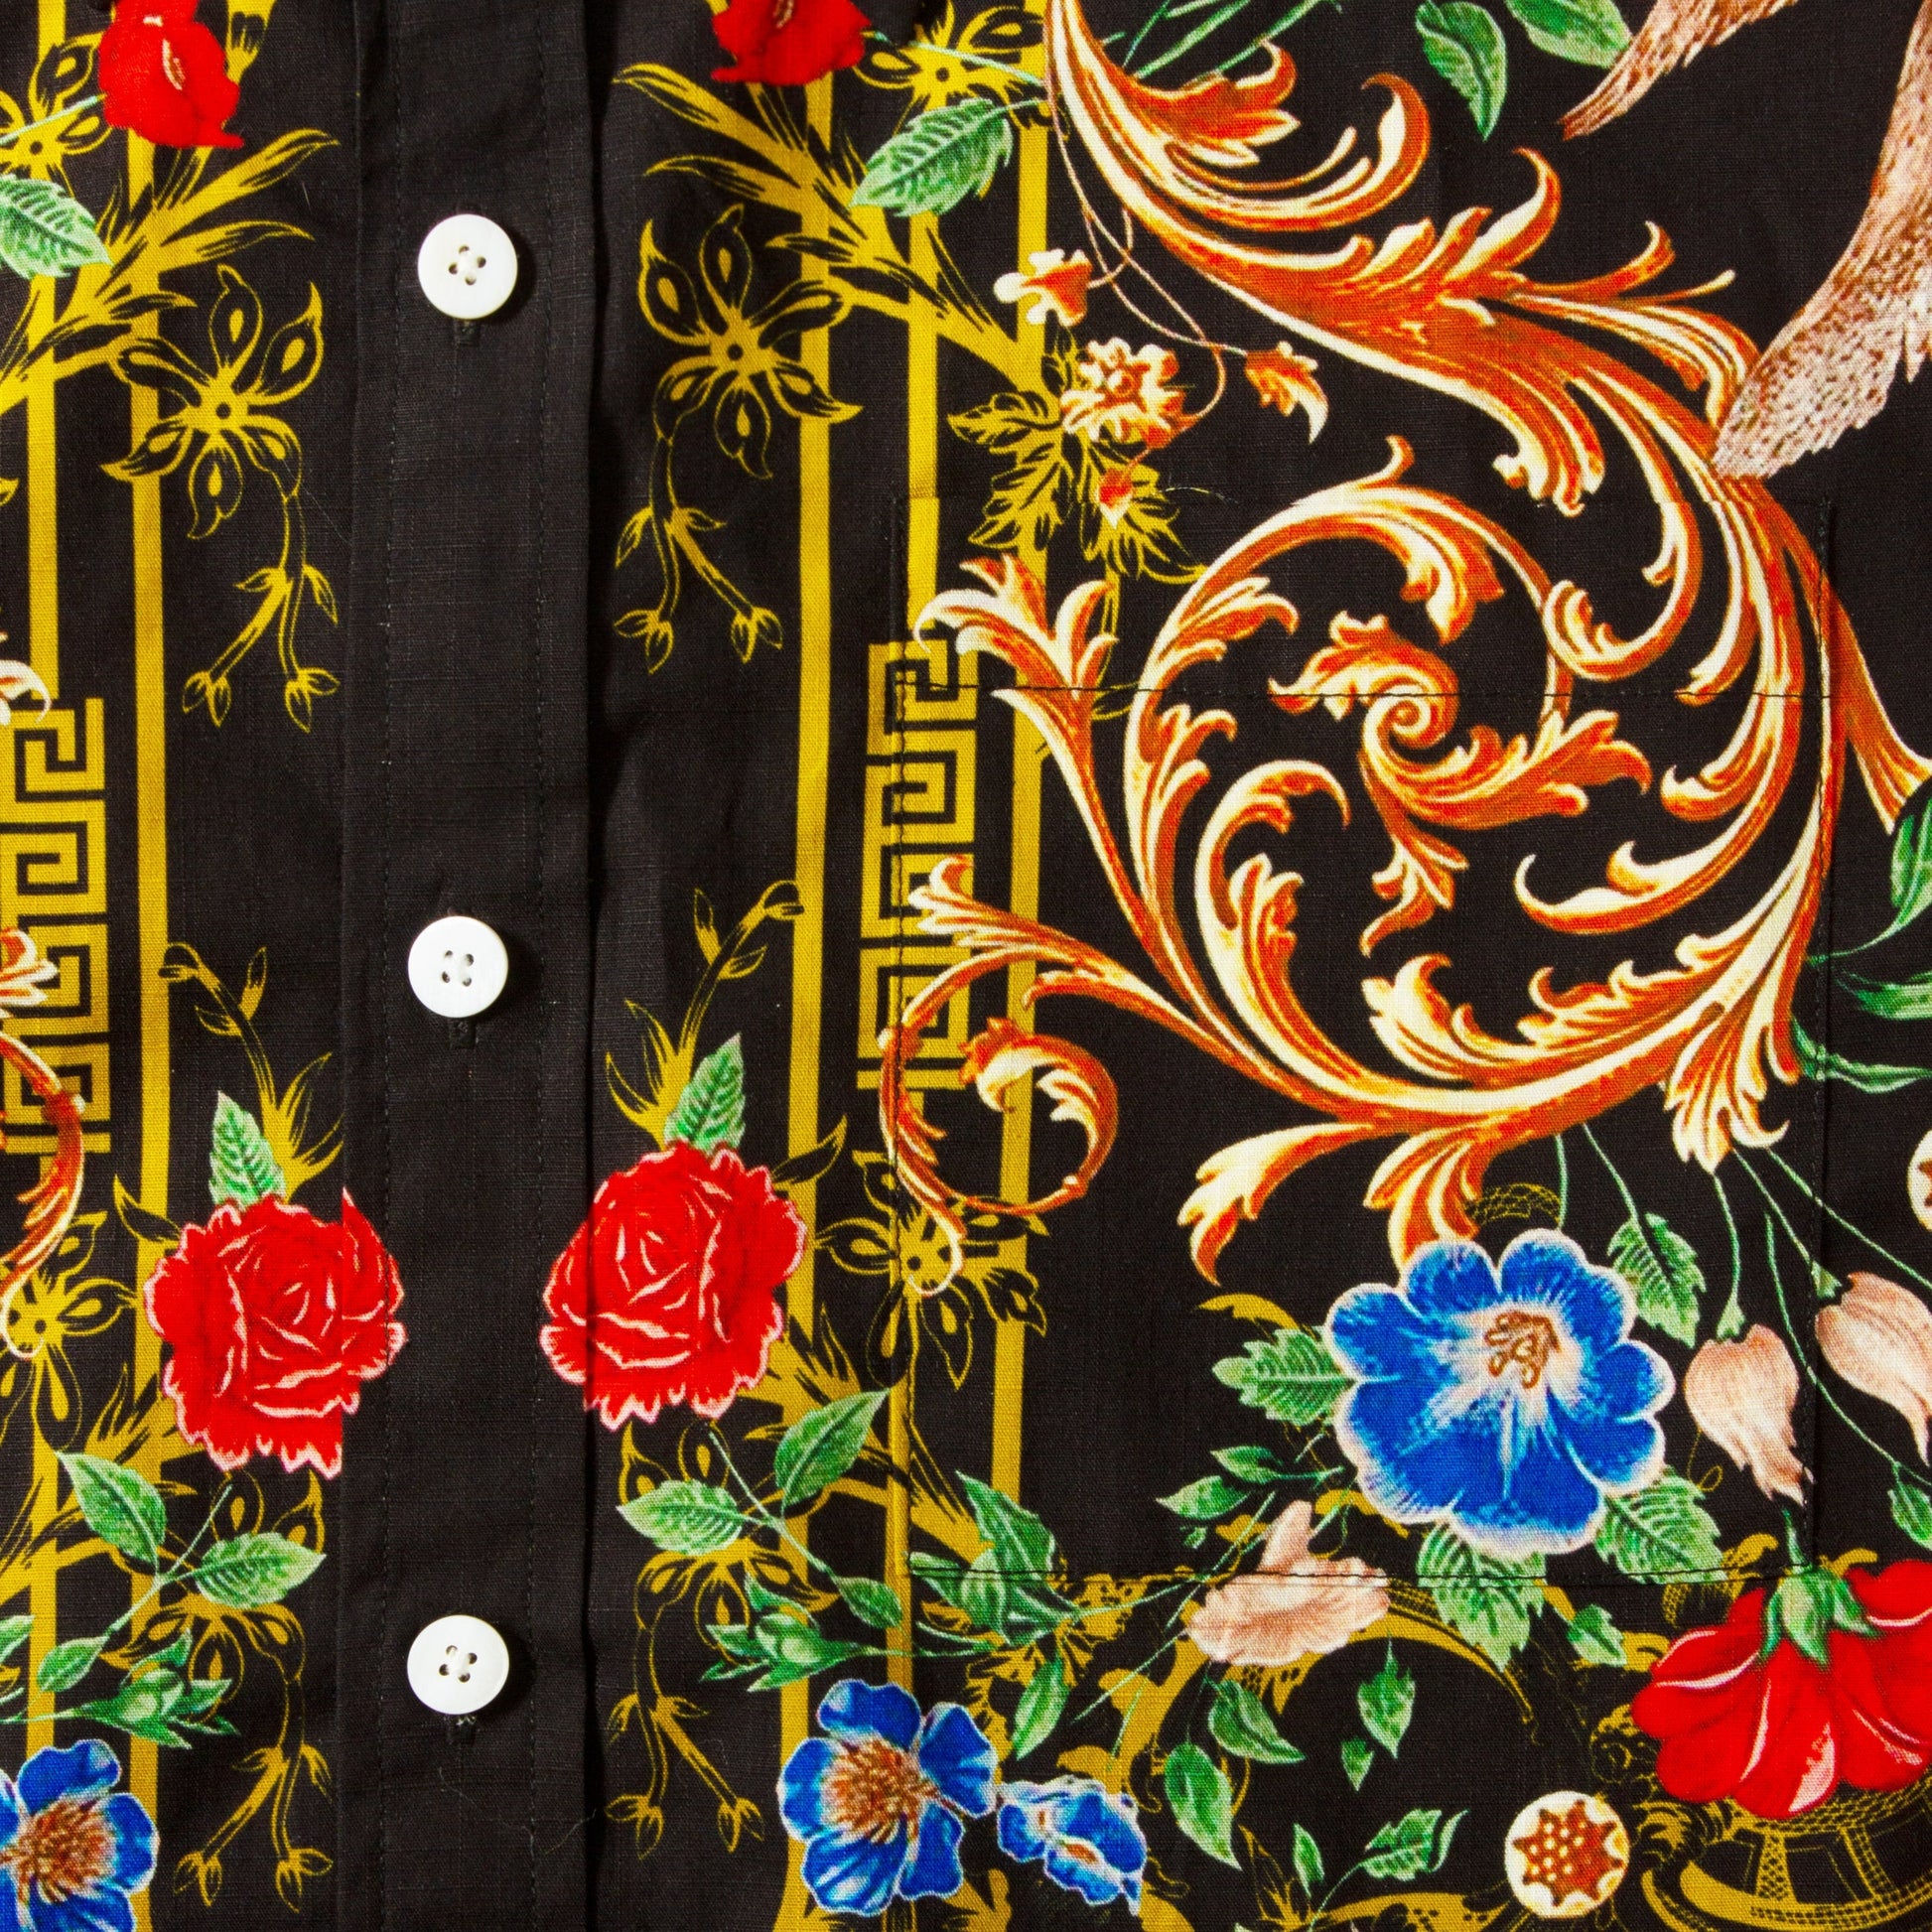 Baroque Floral Pattern Short Sleeve Shirt for Men Jonvidesign